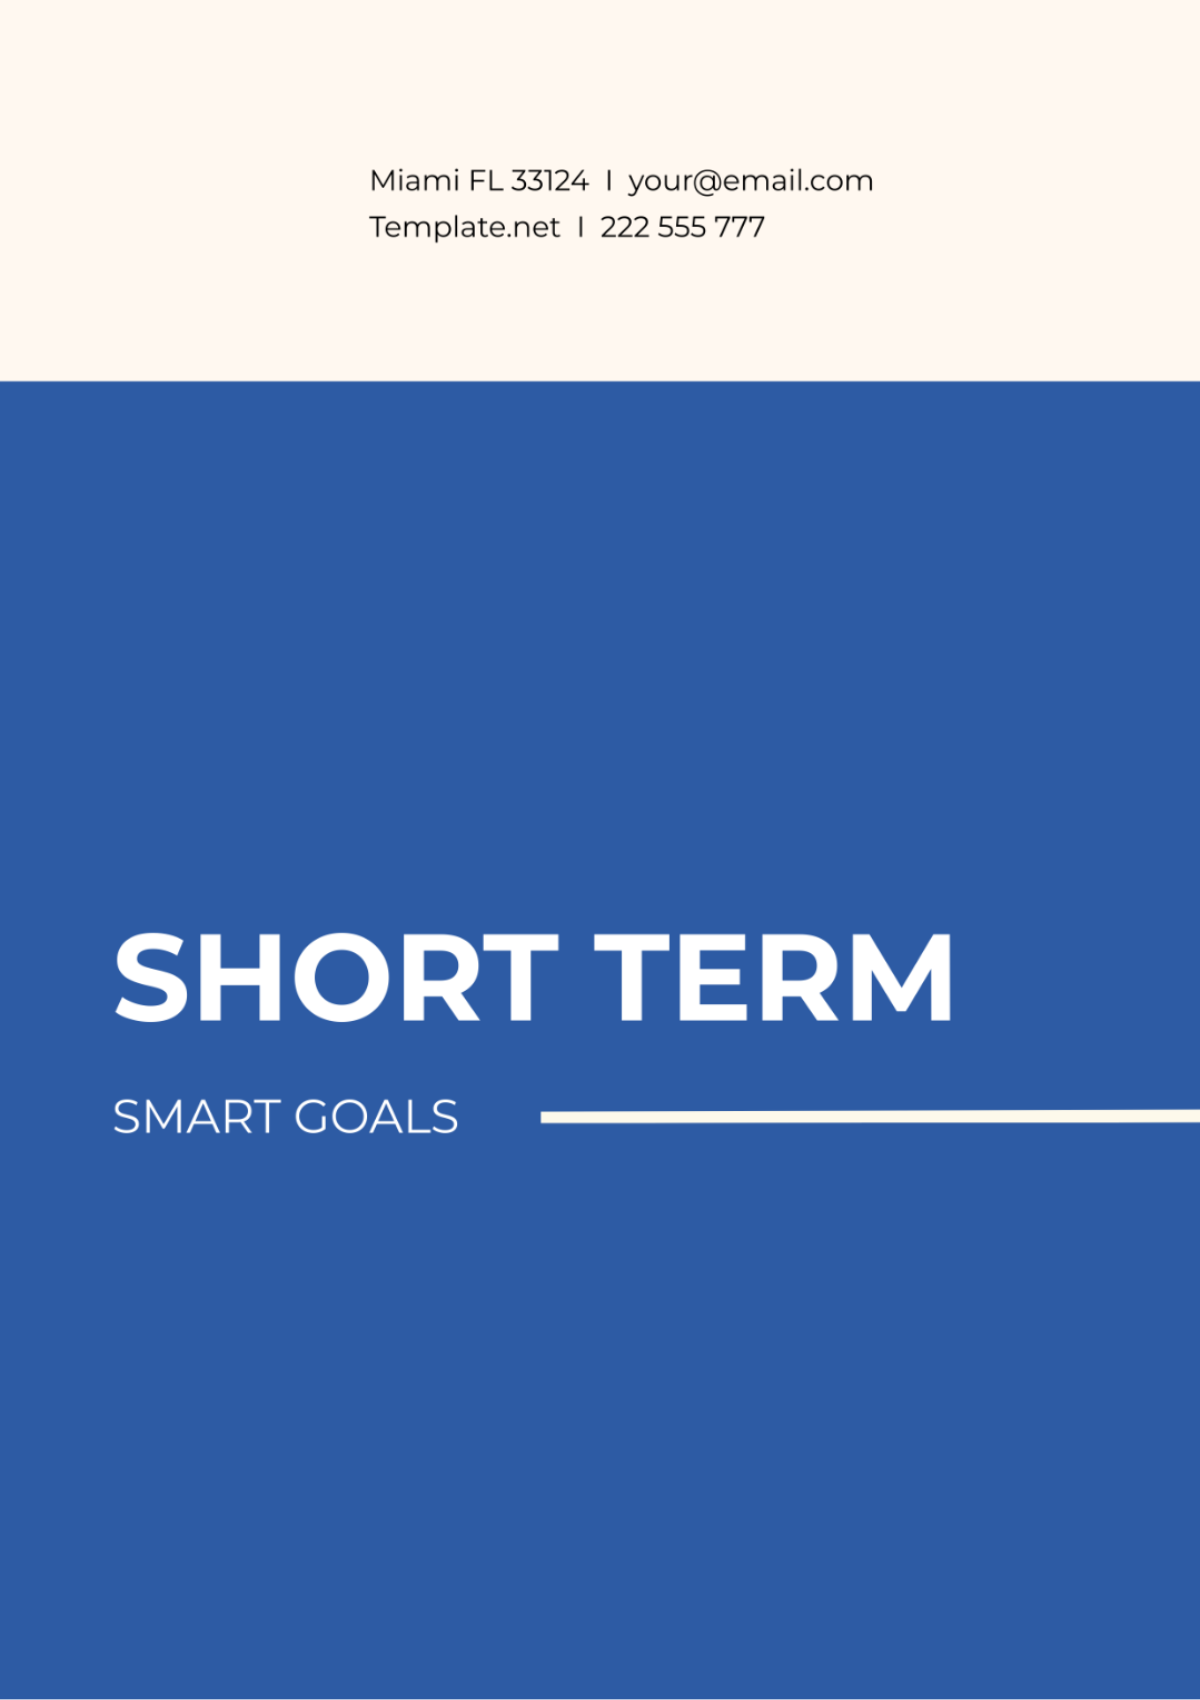 Short Term SMART Goals Template